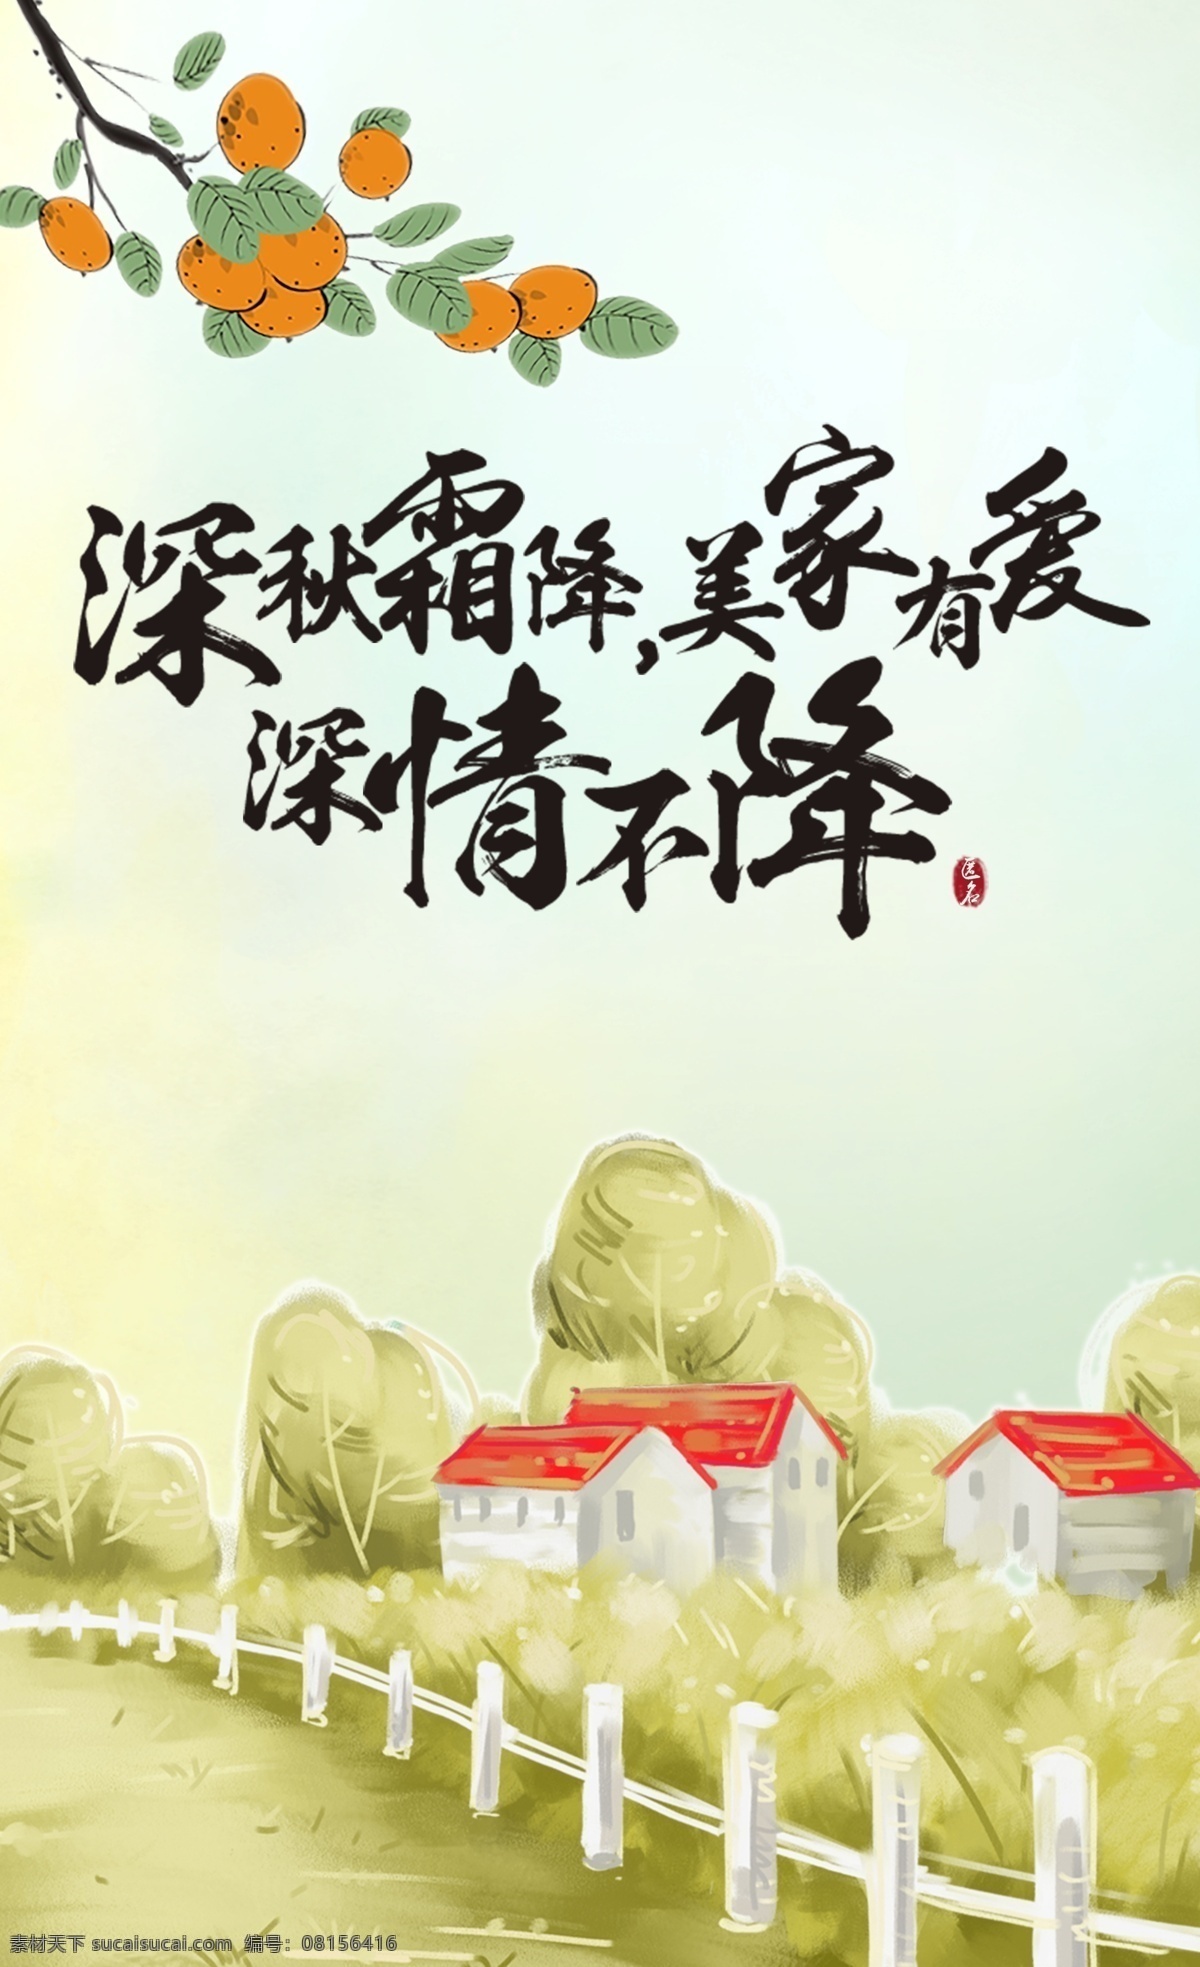 二十四节气 霜降 24节气 房子 柿子 植物 中国风 栅栏 篱笆 卡通 海报 广告 节日 300pi a 分层 风景